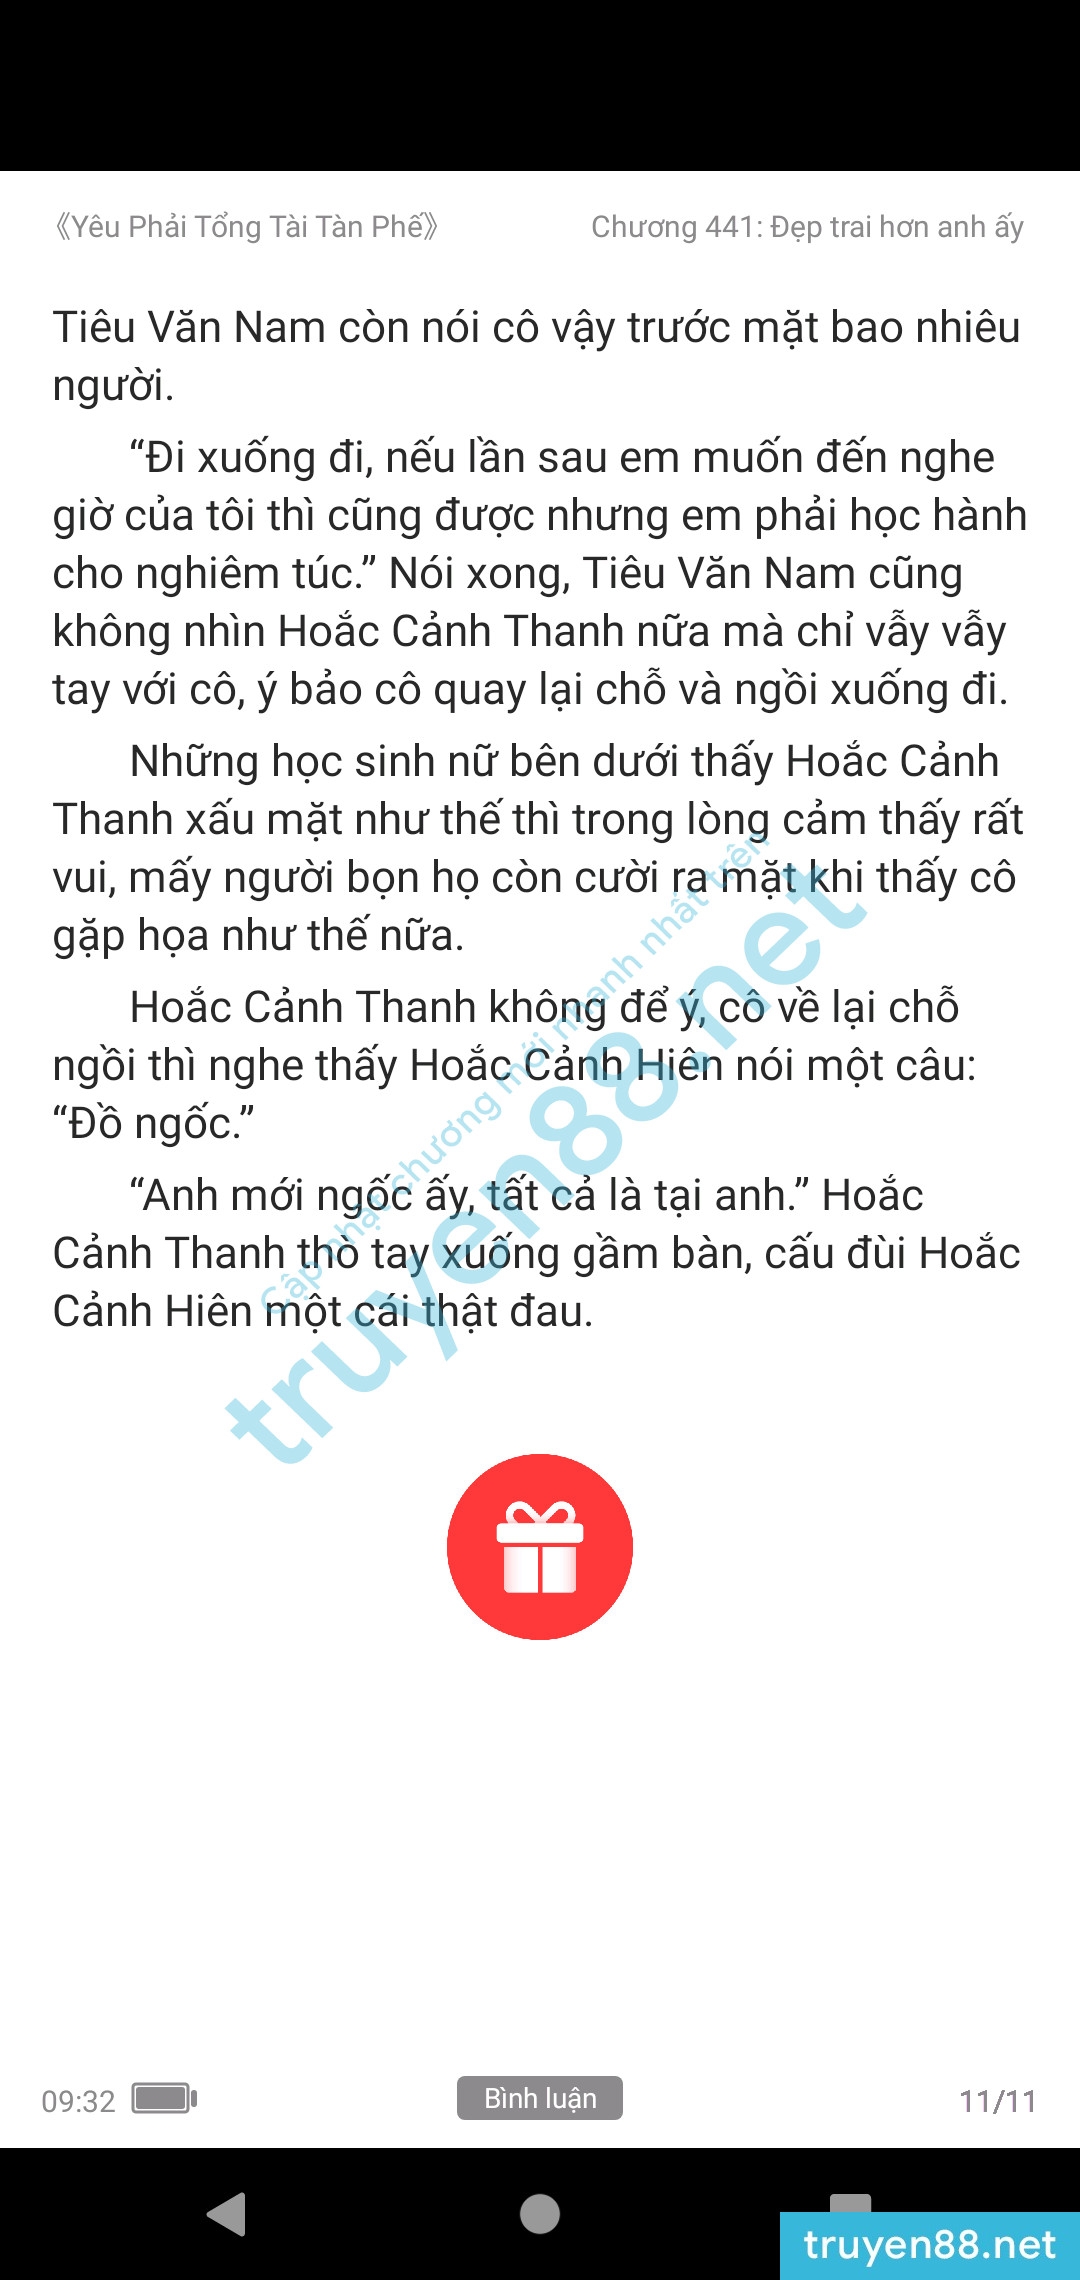 yeu-phai-tong-tai-tan-phe-434-0